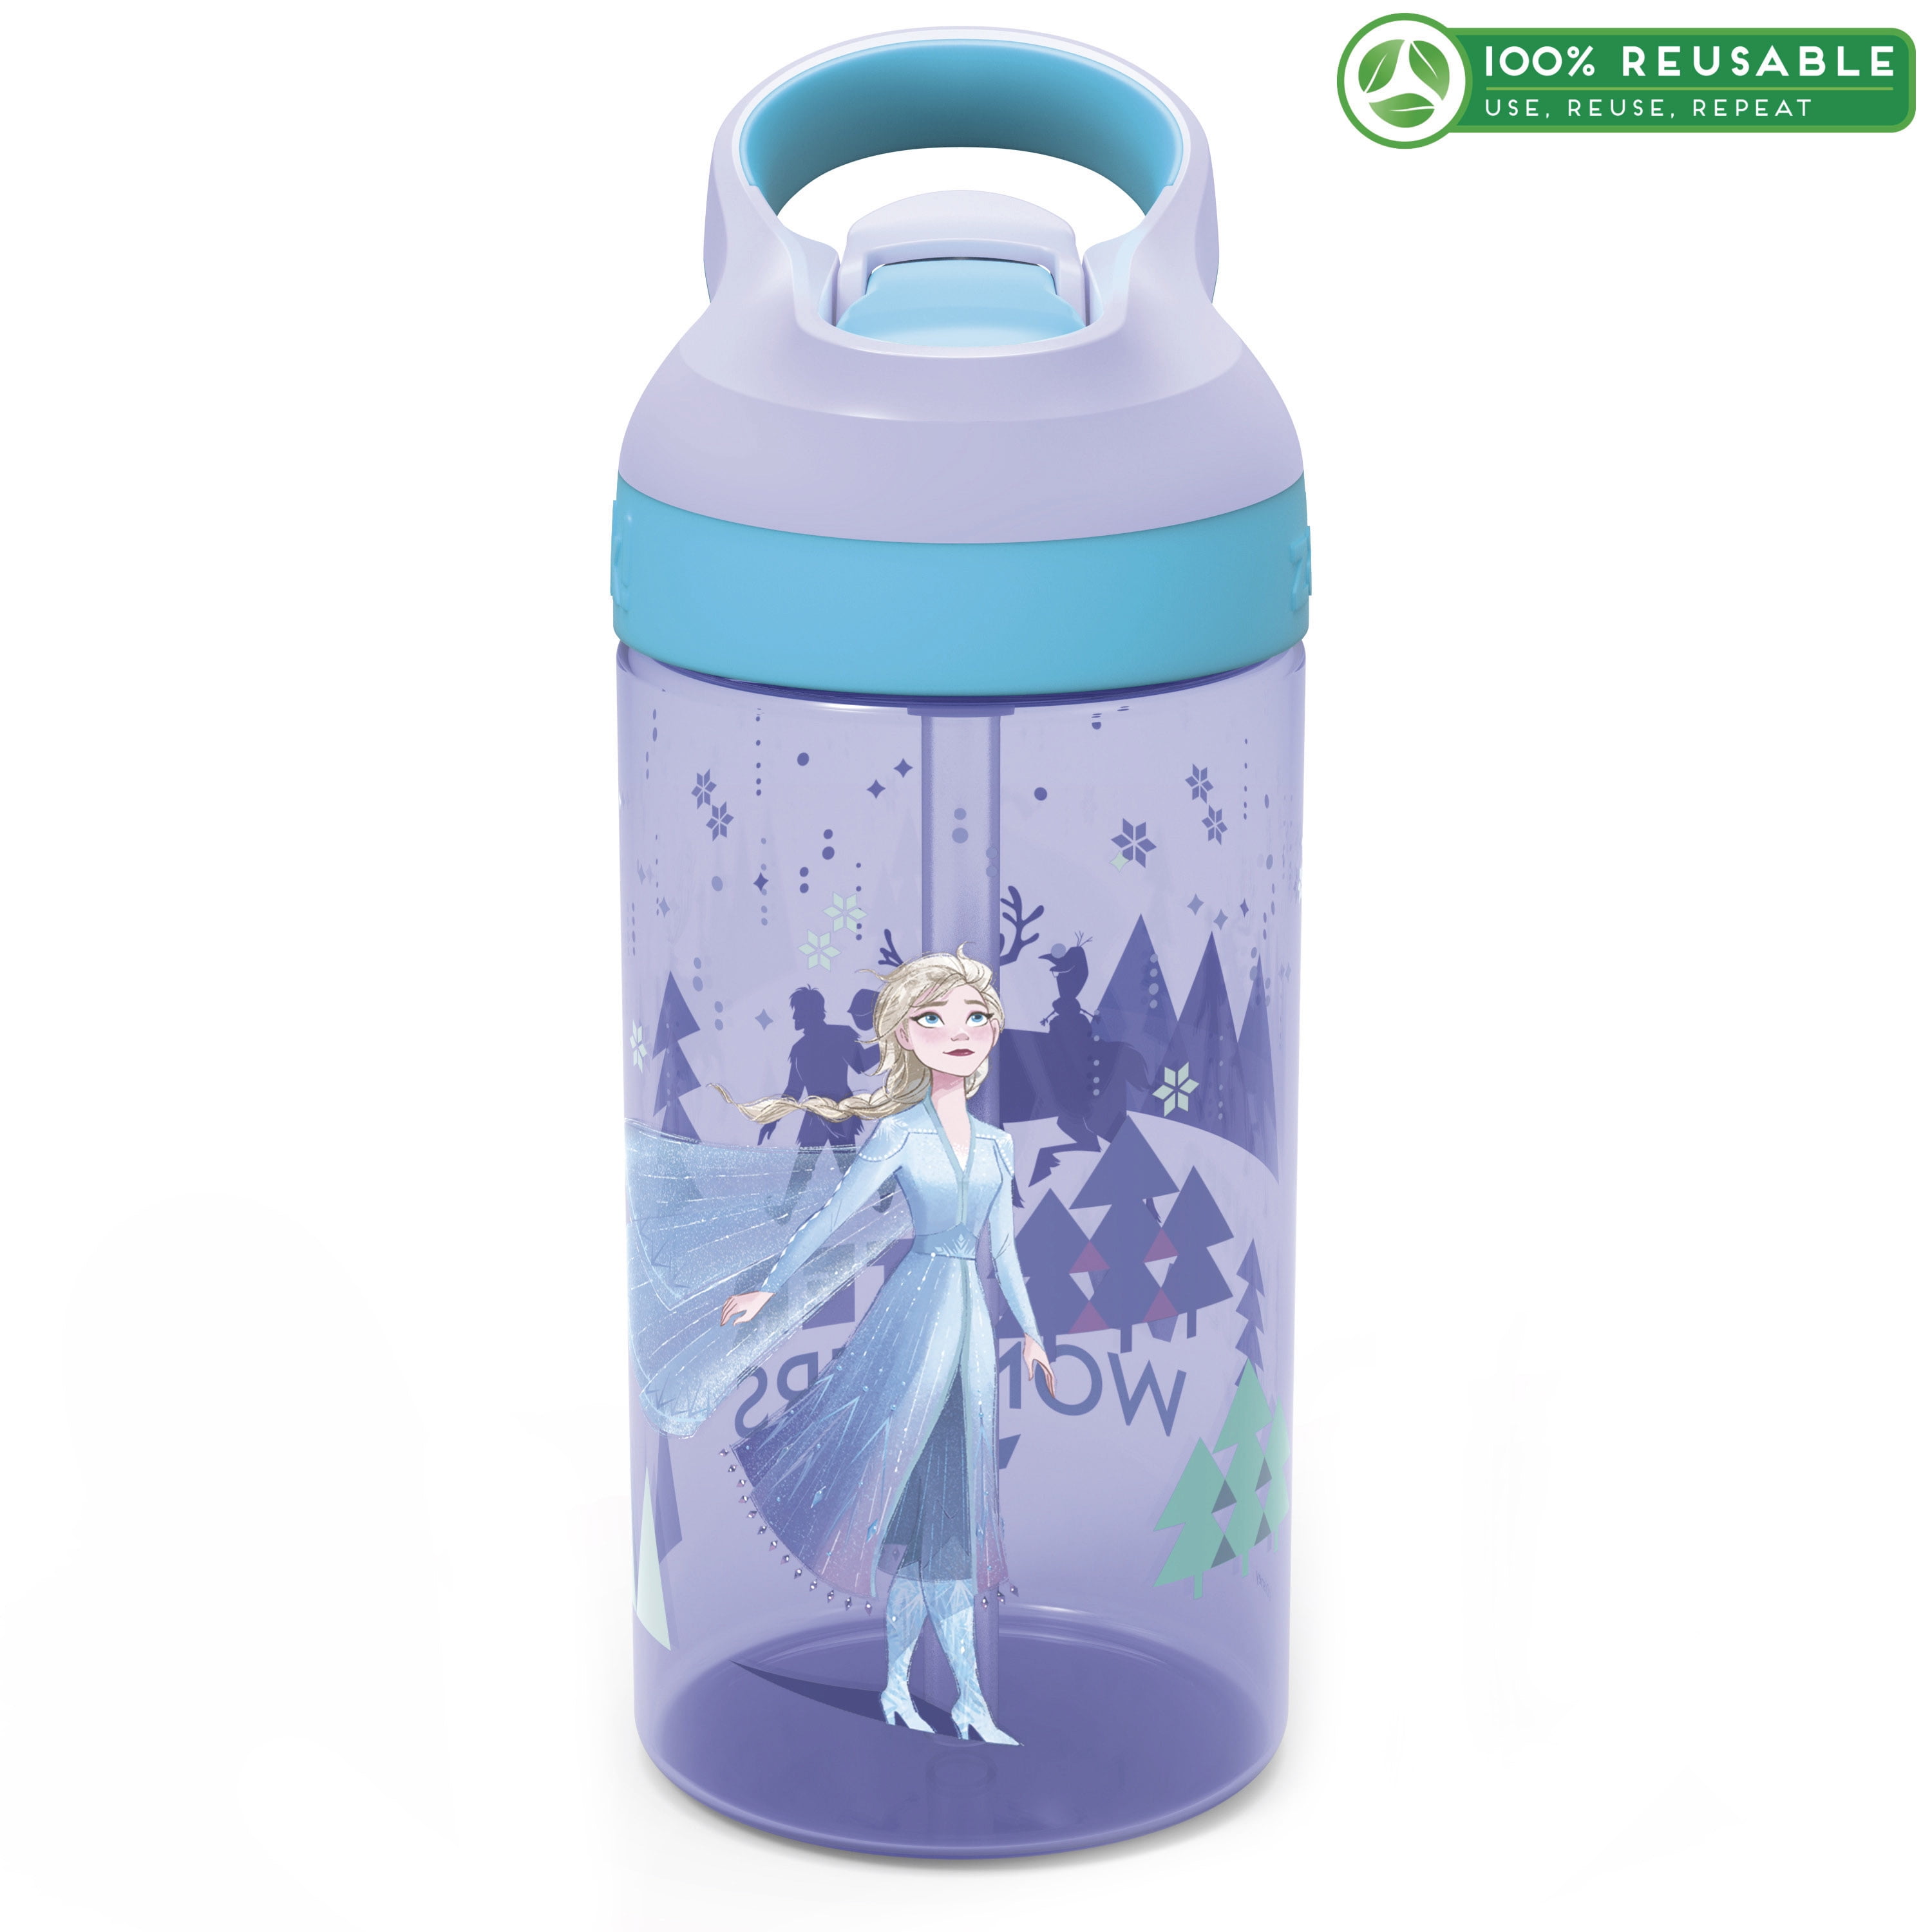 2-Pack Zak Designs Water Bottles Kids Disney Marvel Avengers 16 oz BPA Free 